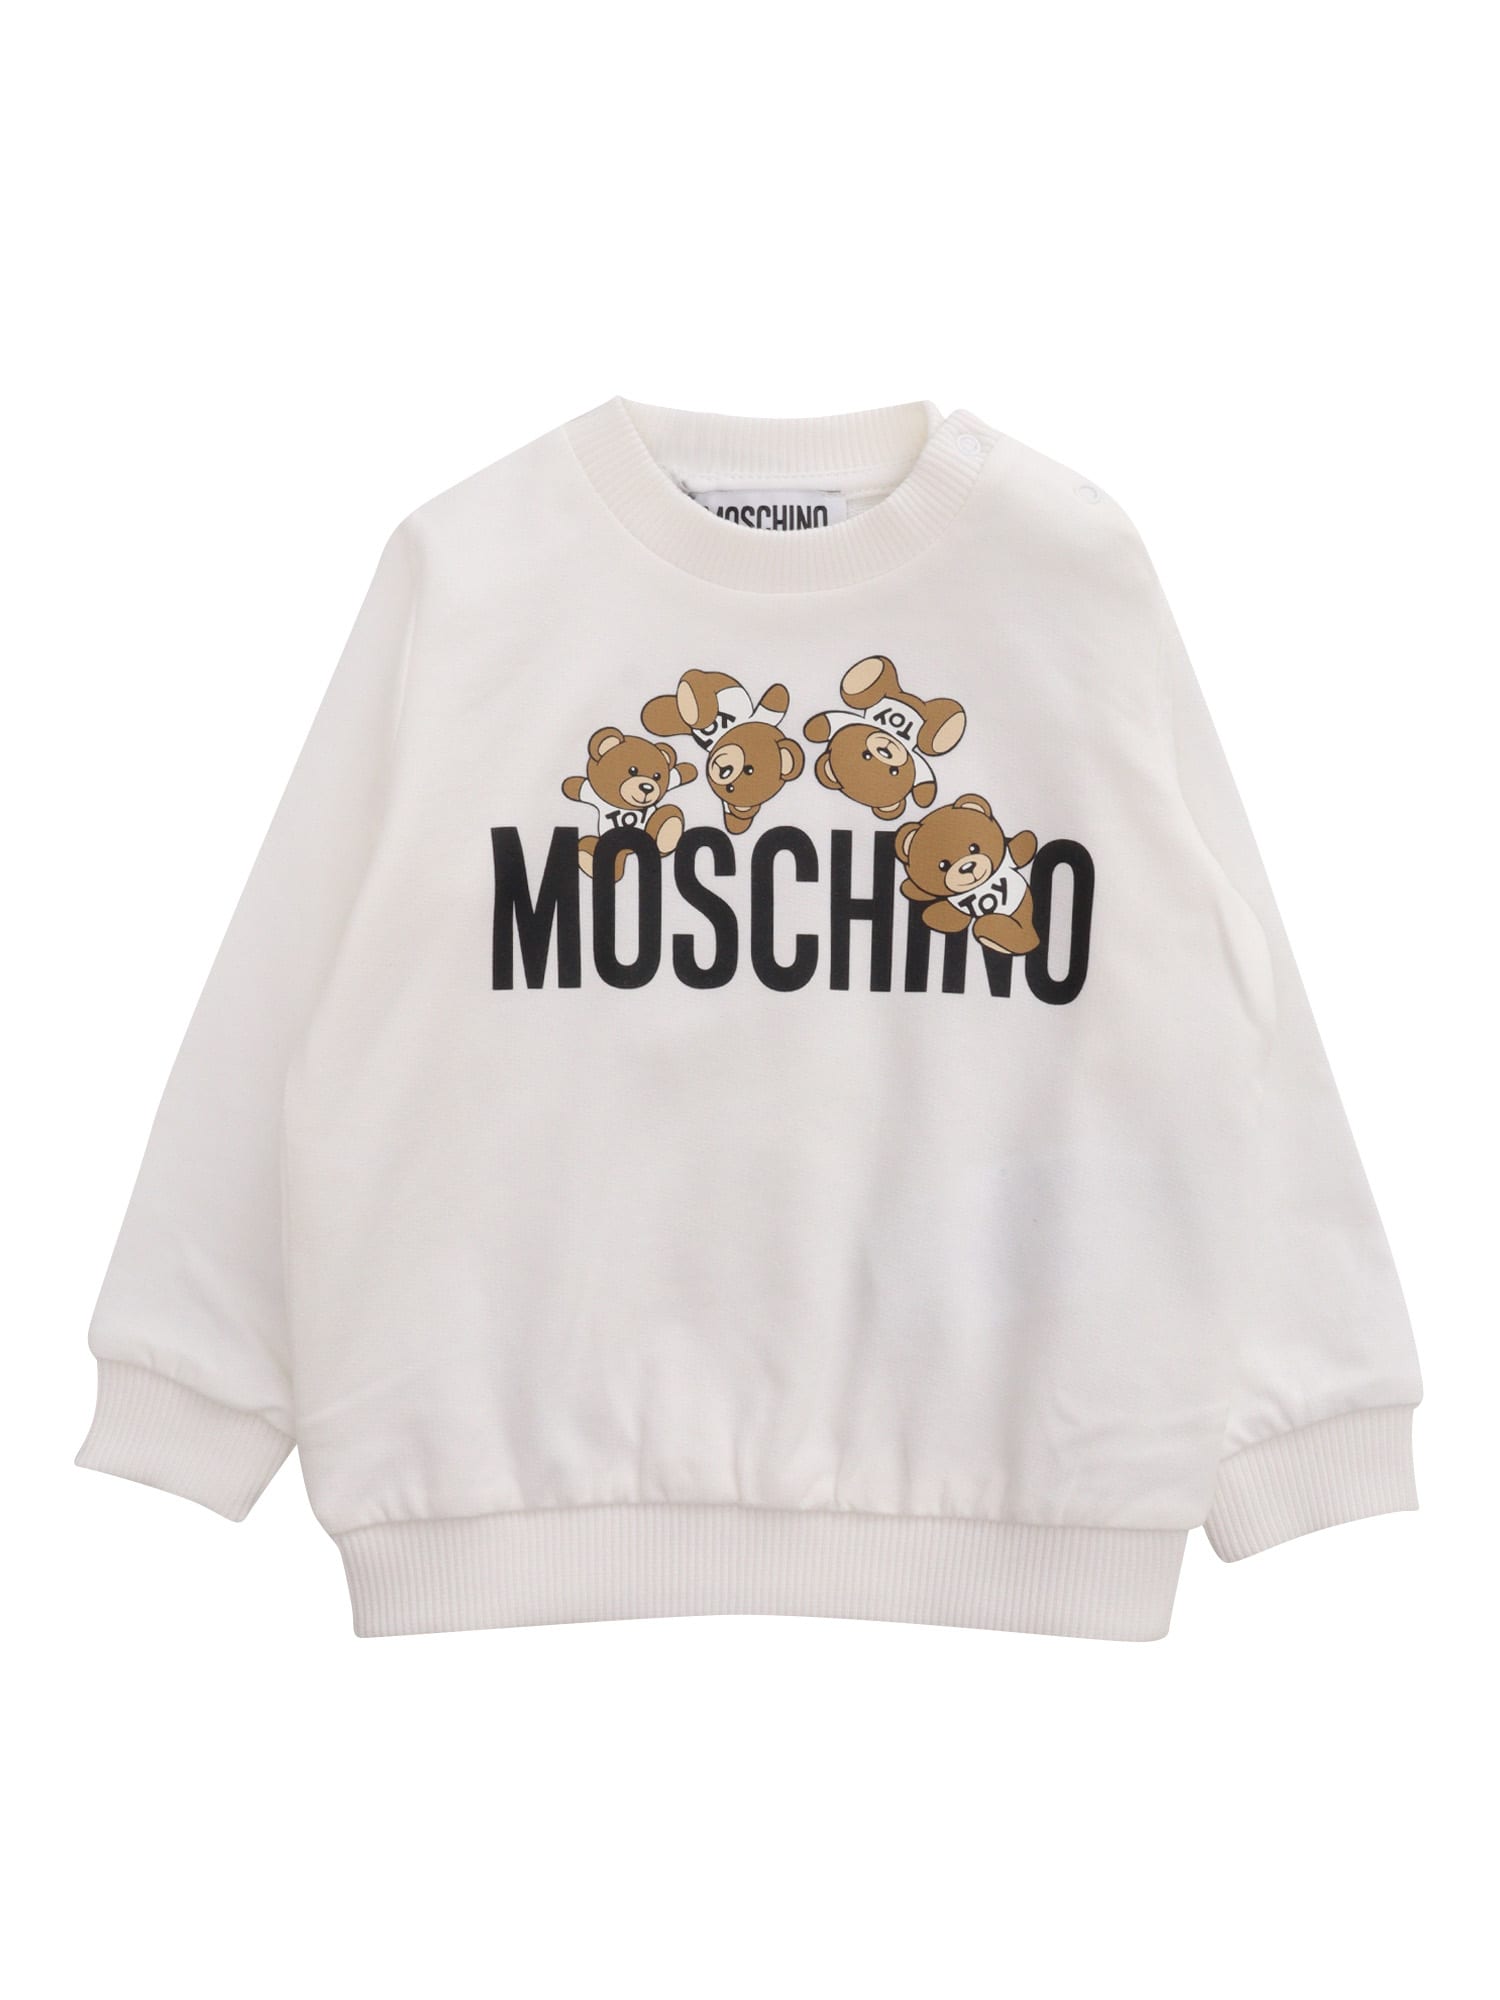 Moschino Babies' White Sweatshirt With Print